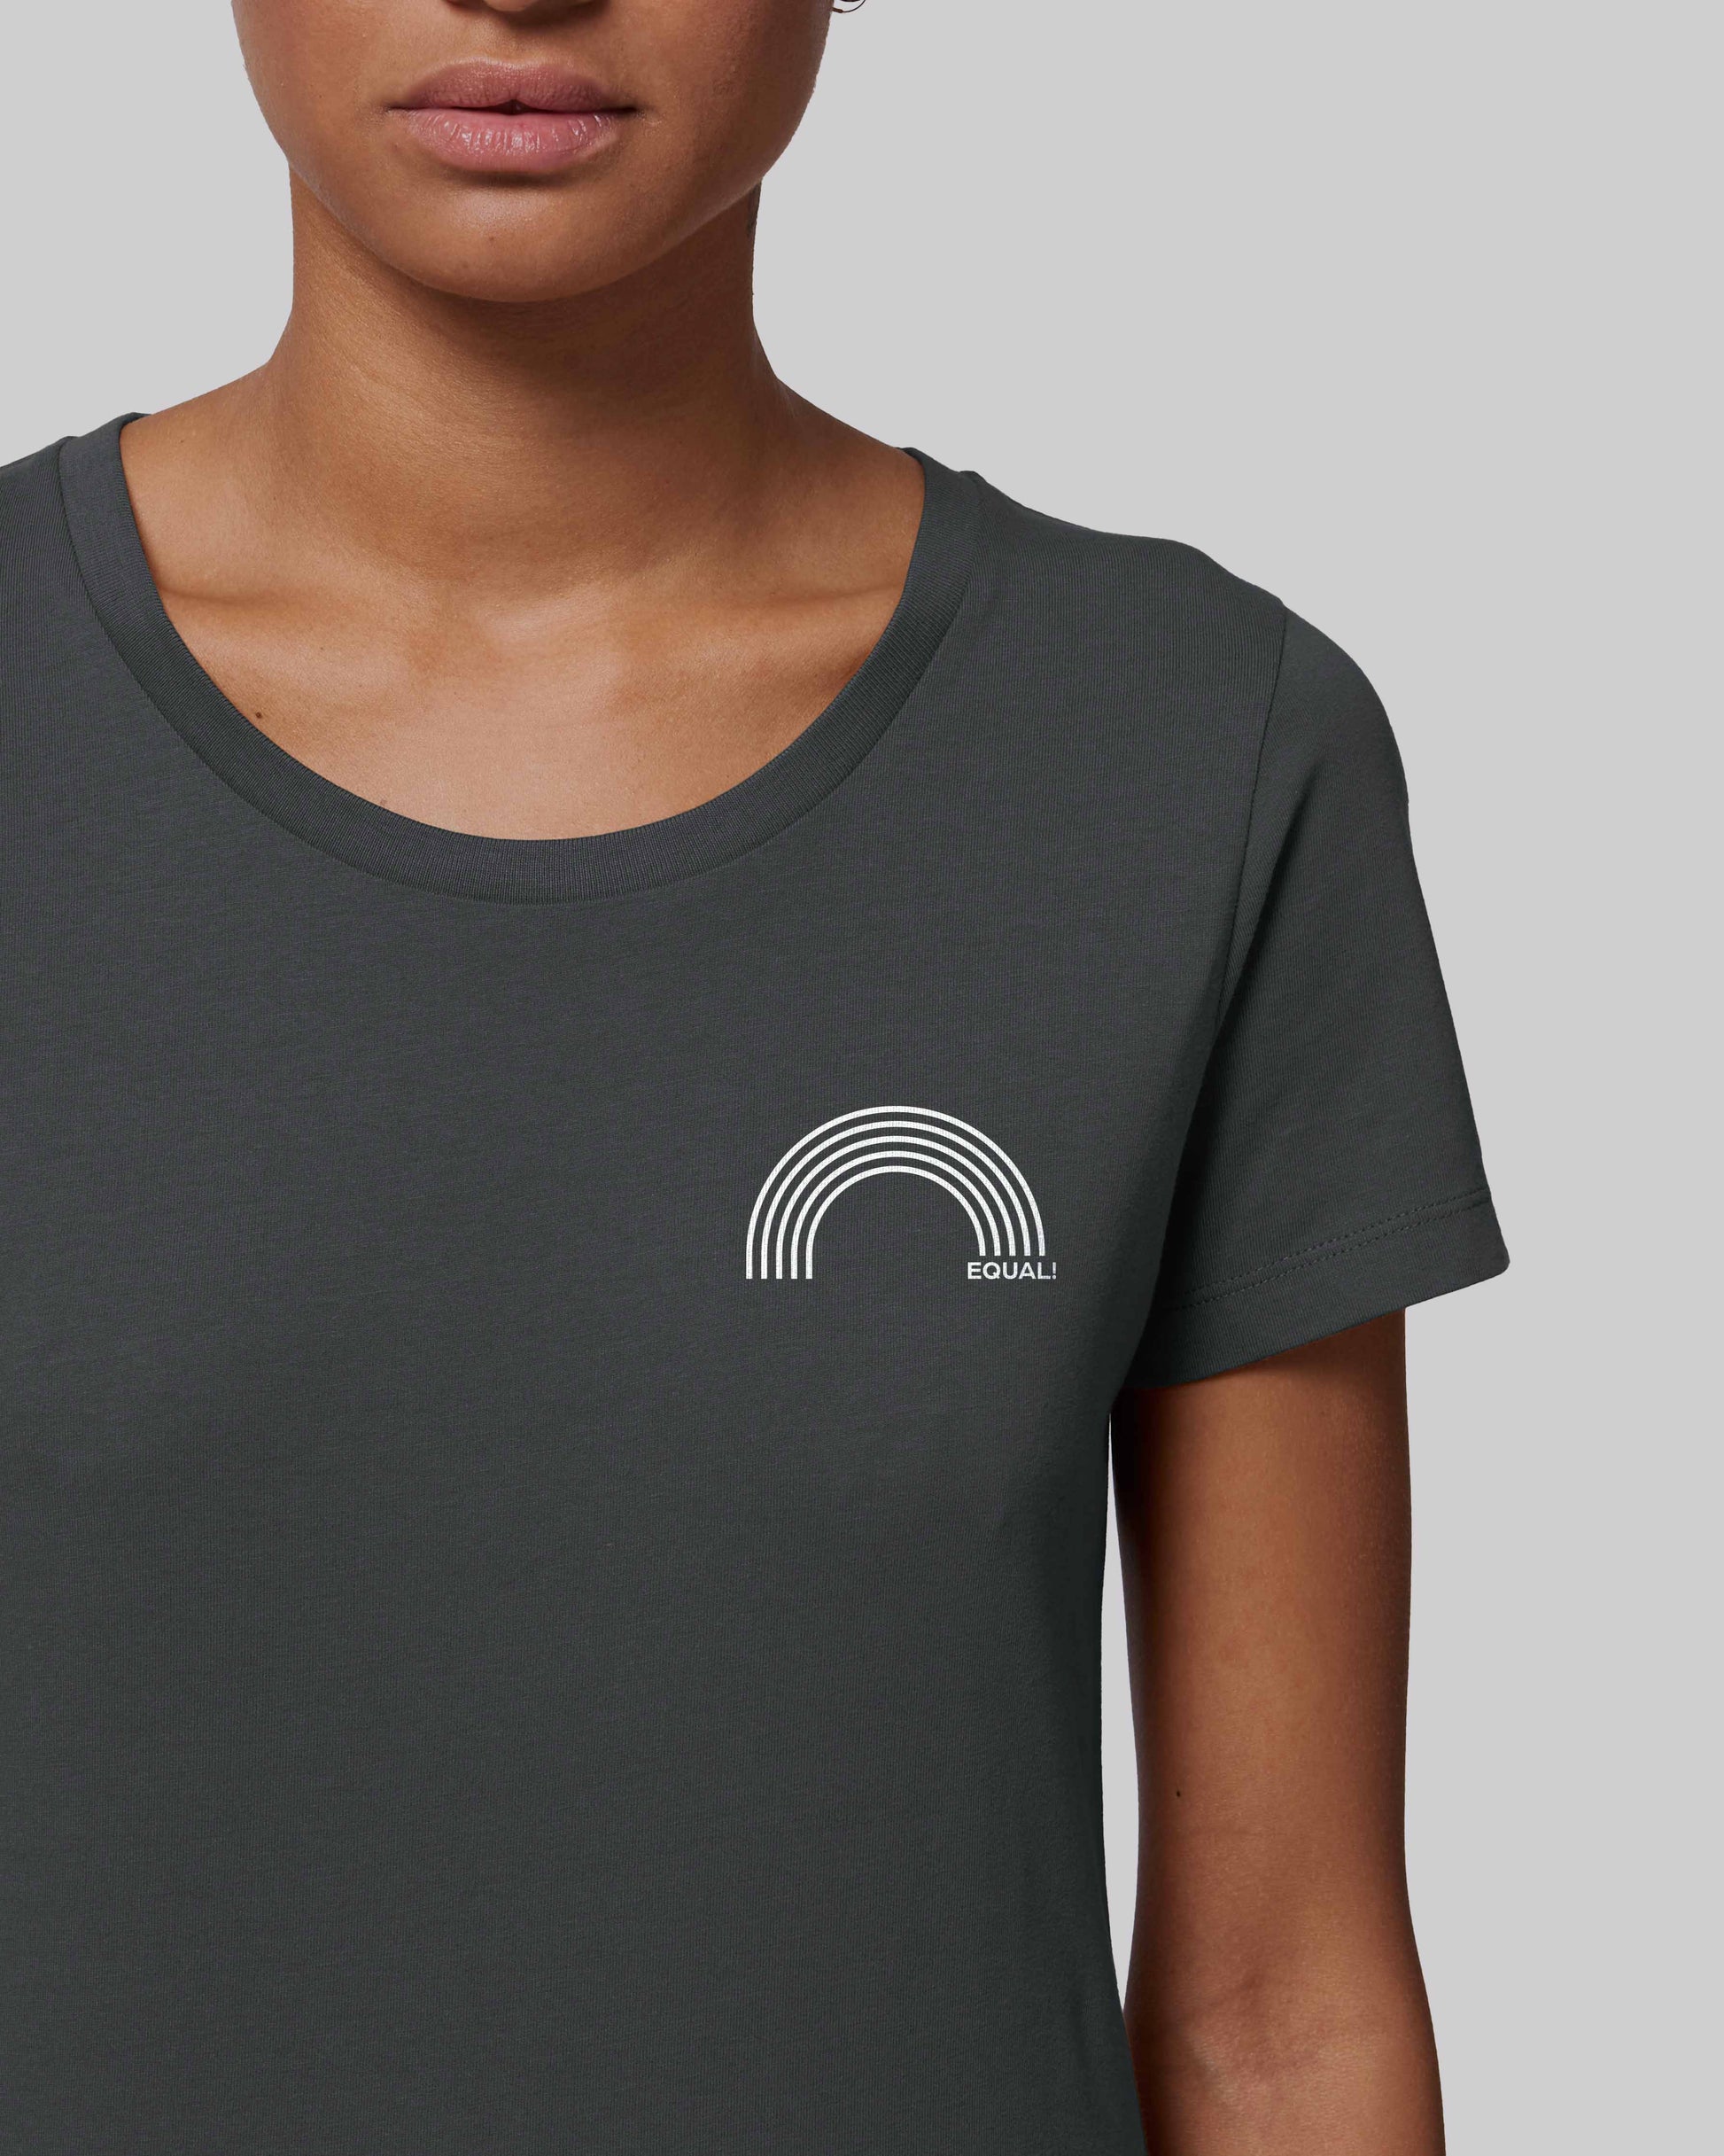 EINHORST® Organic Shirt tailliert in "Anthracite" mit dem Motiv "equal Regenbogen" in der Kombination weißer Regenbogen mit weißer Schrift, Bild von weiblicher Person mit Shirt